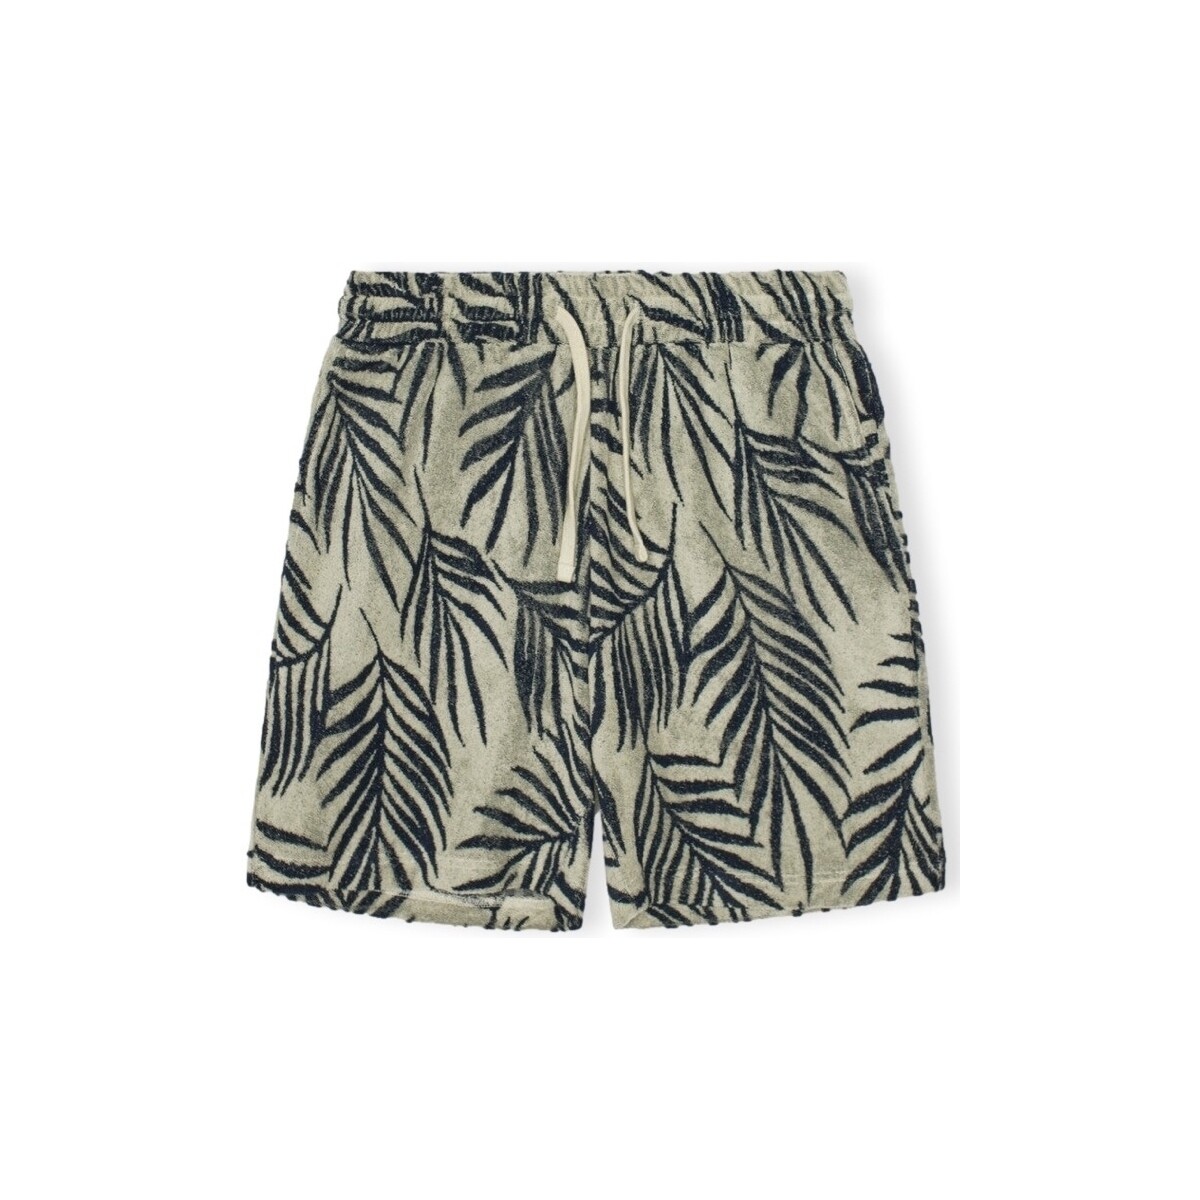 Textil Homem Shorts / Bermudas Revolution Calções Terry - Off White Verde